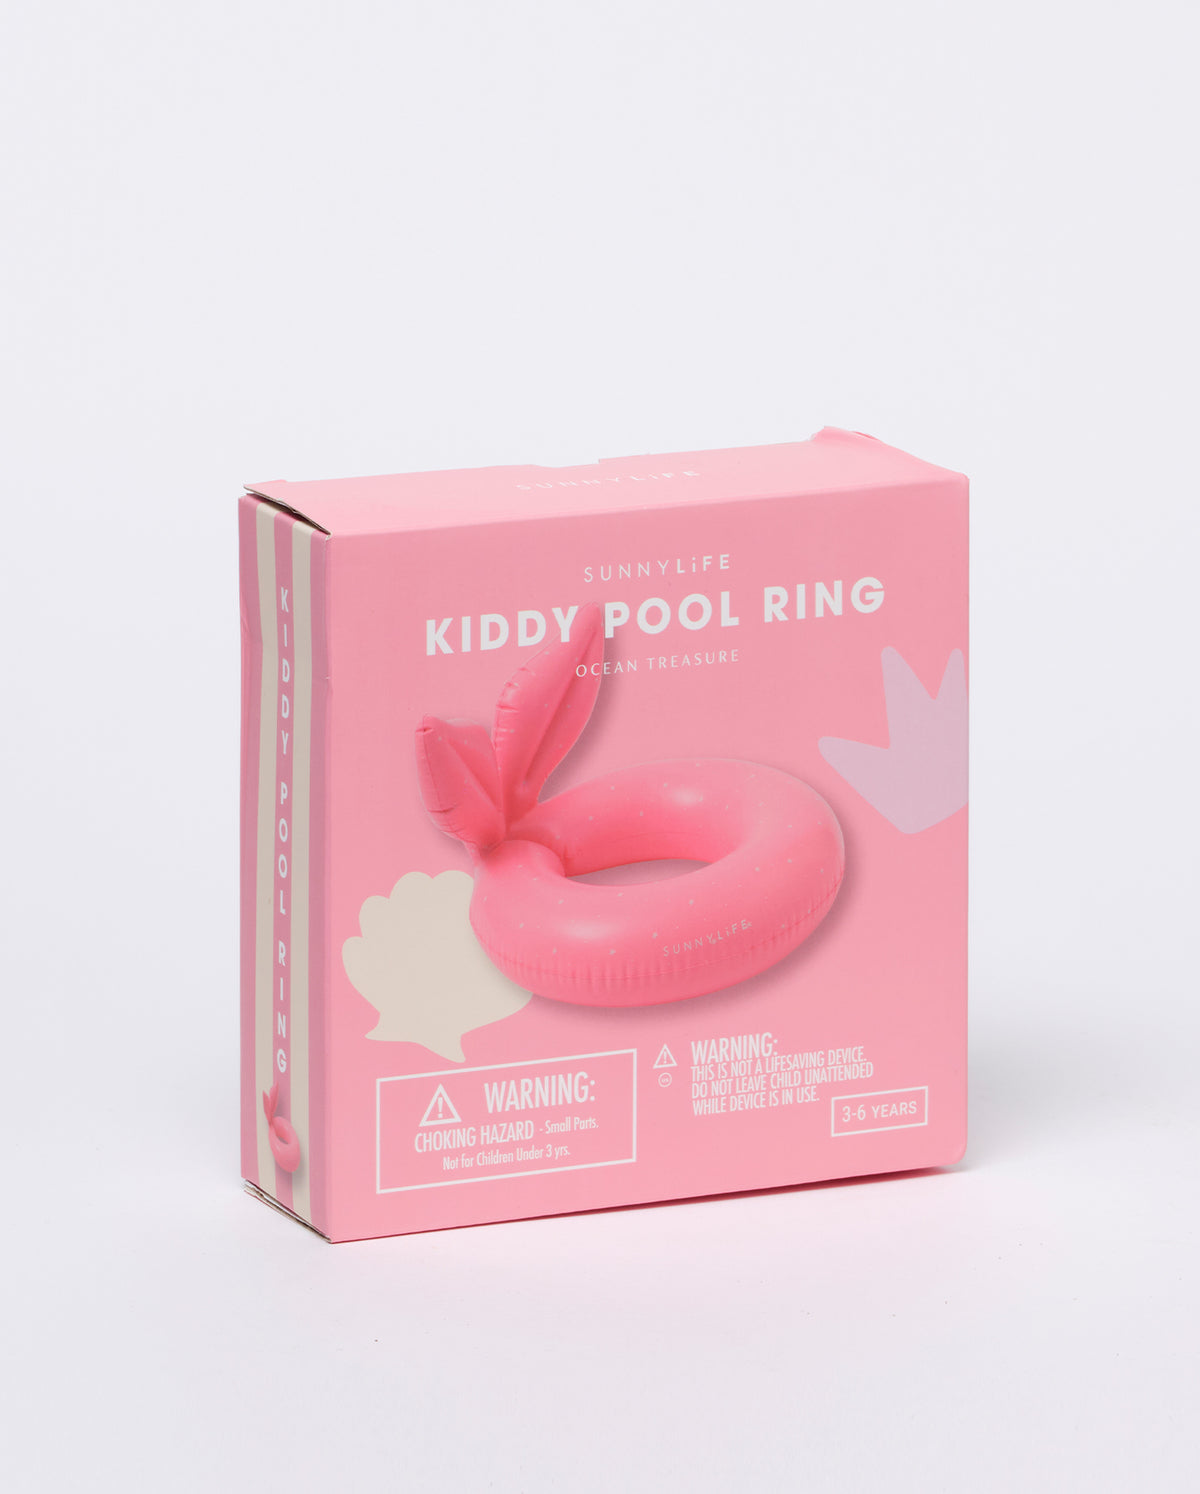 Kiddy Pool Ring Ocean Treasure